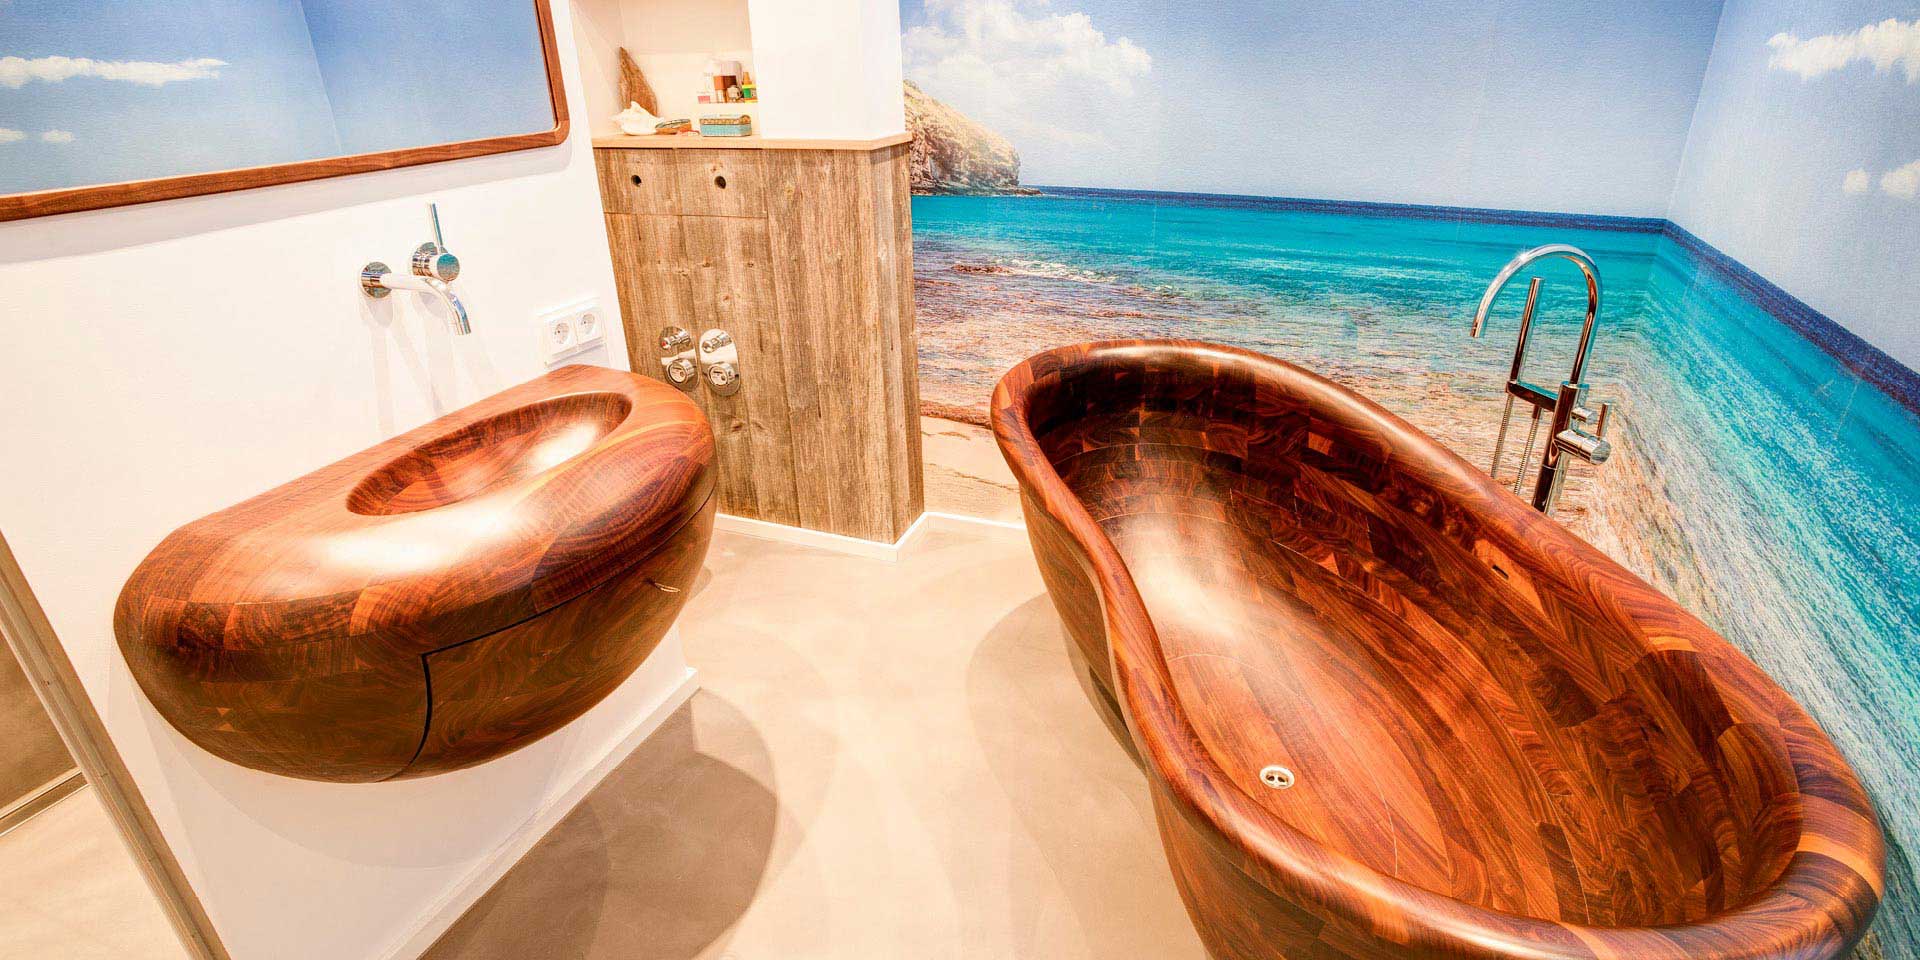 Komplette Badezimmer aus Massivholz - außergewöhnliche Badewannen und Waschbecken aus Holz - edle Badmöbel von Ihrer Möbeltischlerei woodendesign feine Möbel aus Hamburg